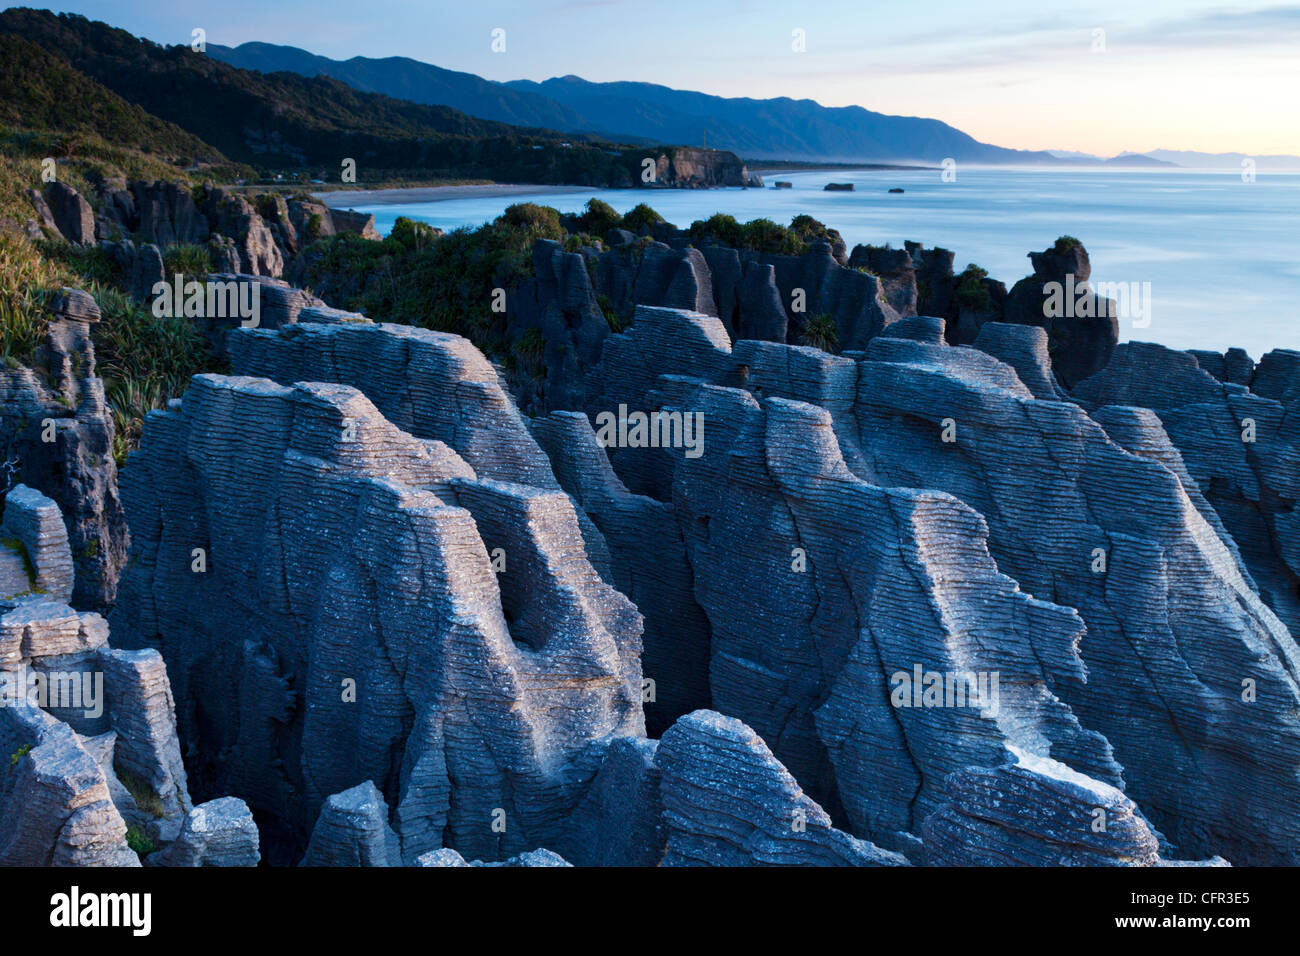 Formations de calcaire érodé connu sous le nom de Pancake Rocks, Dolomite Point, Punakaiki, sur la côte ouest de l'île Sud de la Nouvelle-Zélande. Banque D'Images